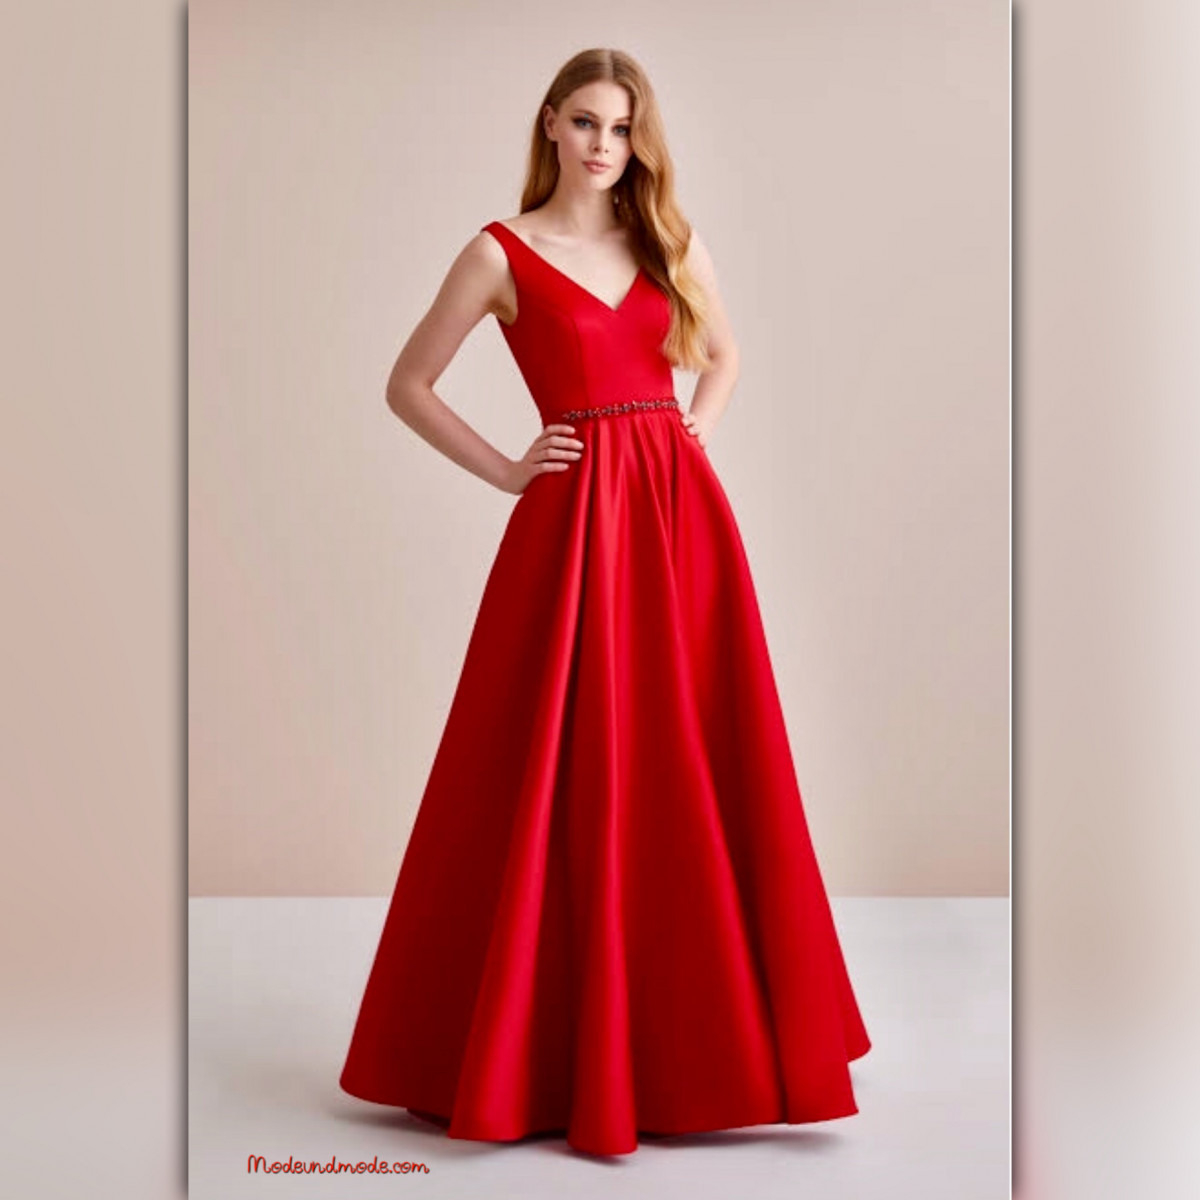 10 Luxurius Rote Kleider Vertrieb15 Perfekt Rote Kleider Spezialgebiet